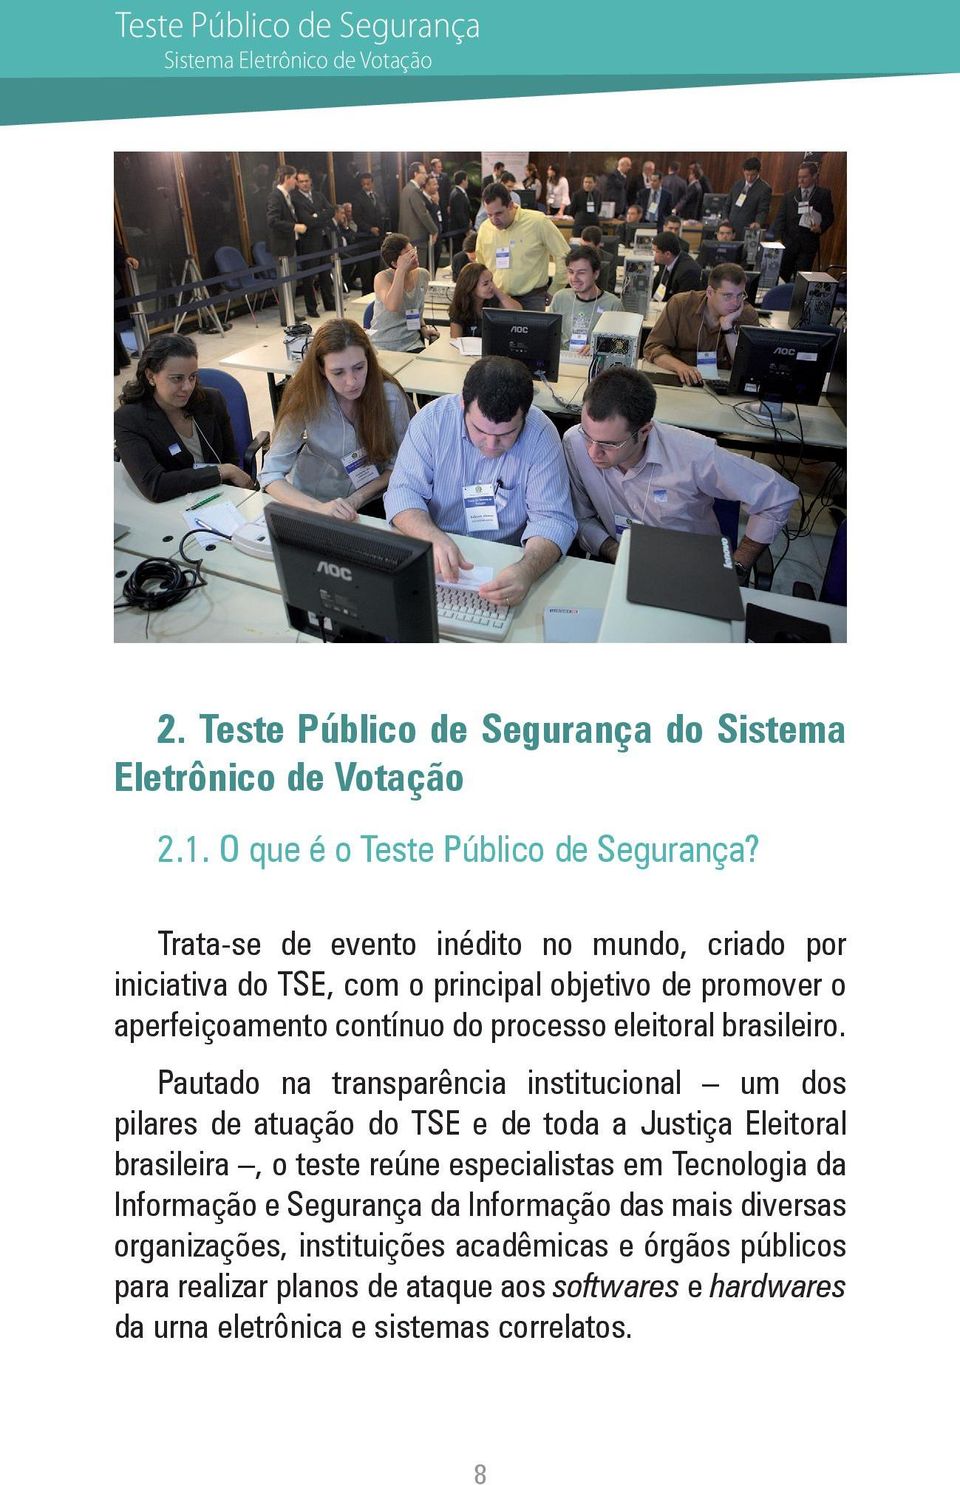 Pautado na transparência institucional um dos pilares de atuação do TSE e de toda a Justiça Eleitoral brasileira, o teste reúne especialistas em Tecnologia da Informação e